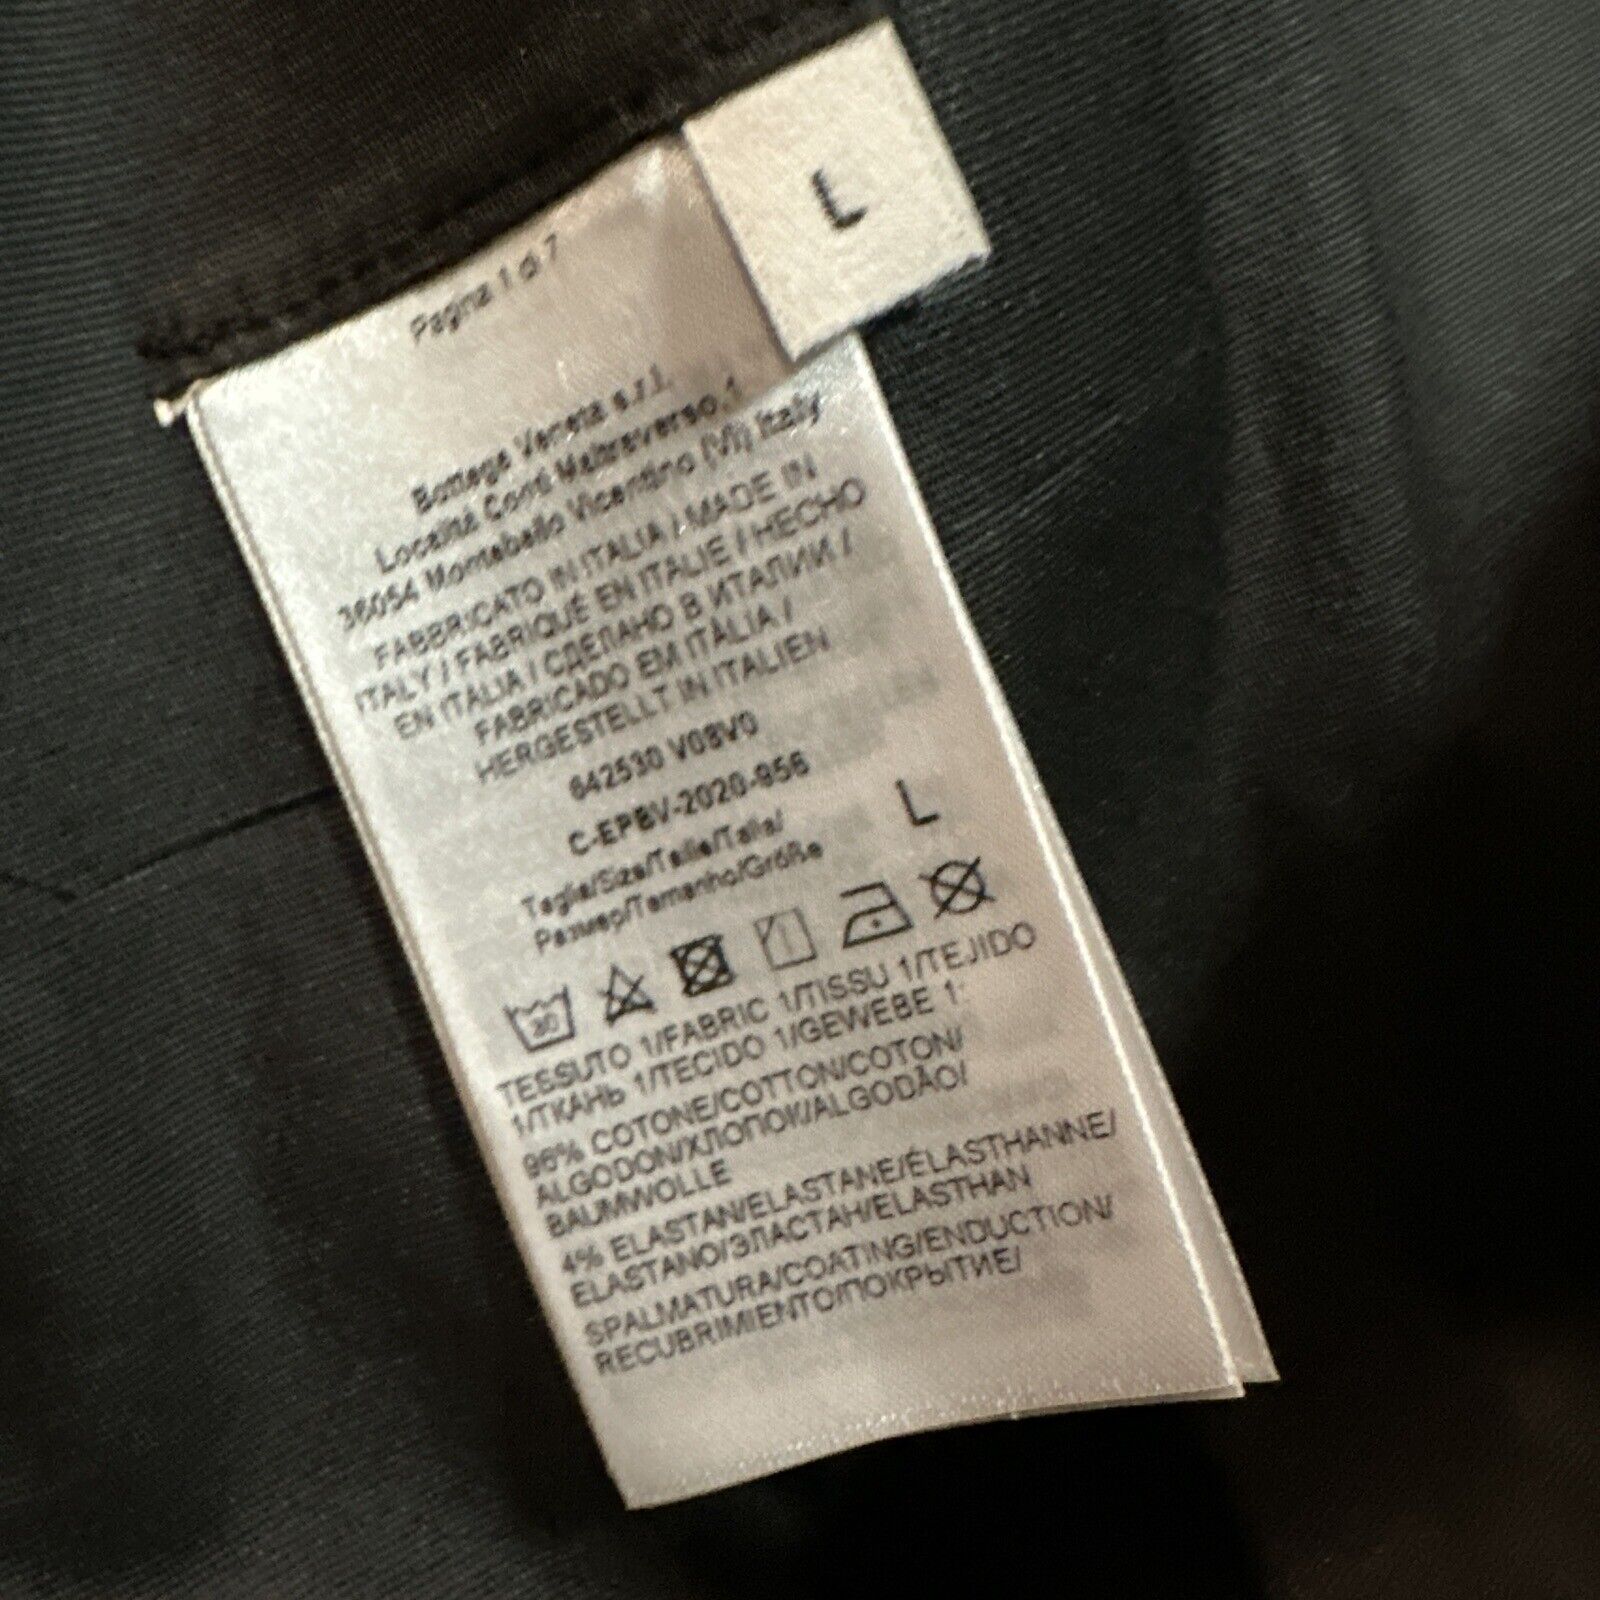 Новый мужской плащ Bottega Veneta из эластичного хлопка цвета DK шоколадный L за 3100 долларов США